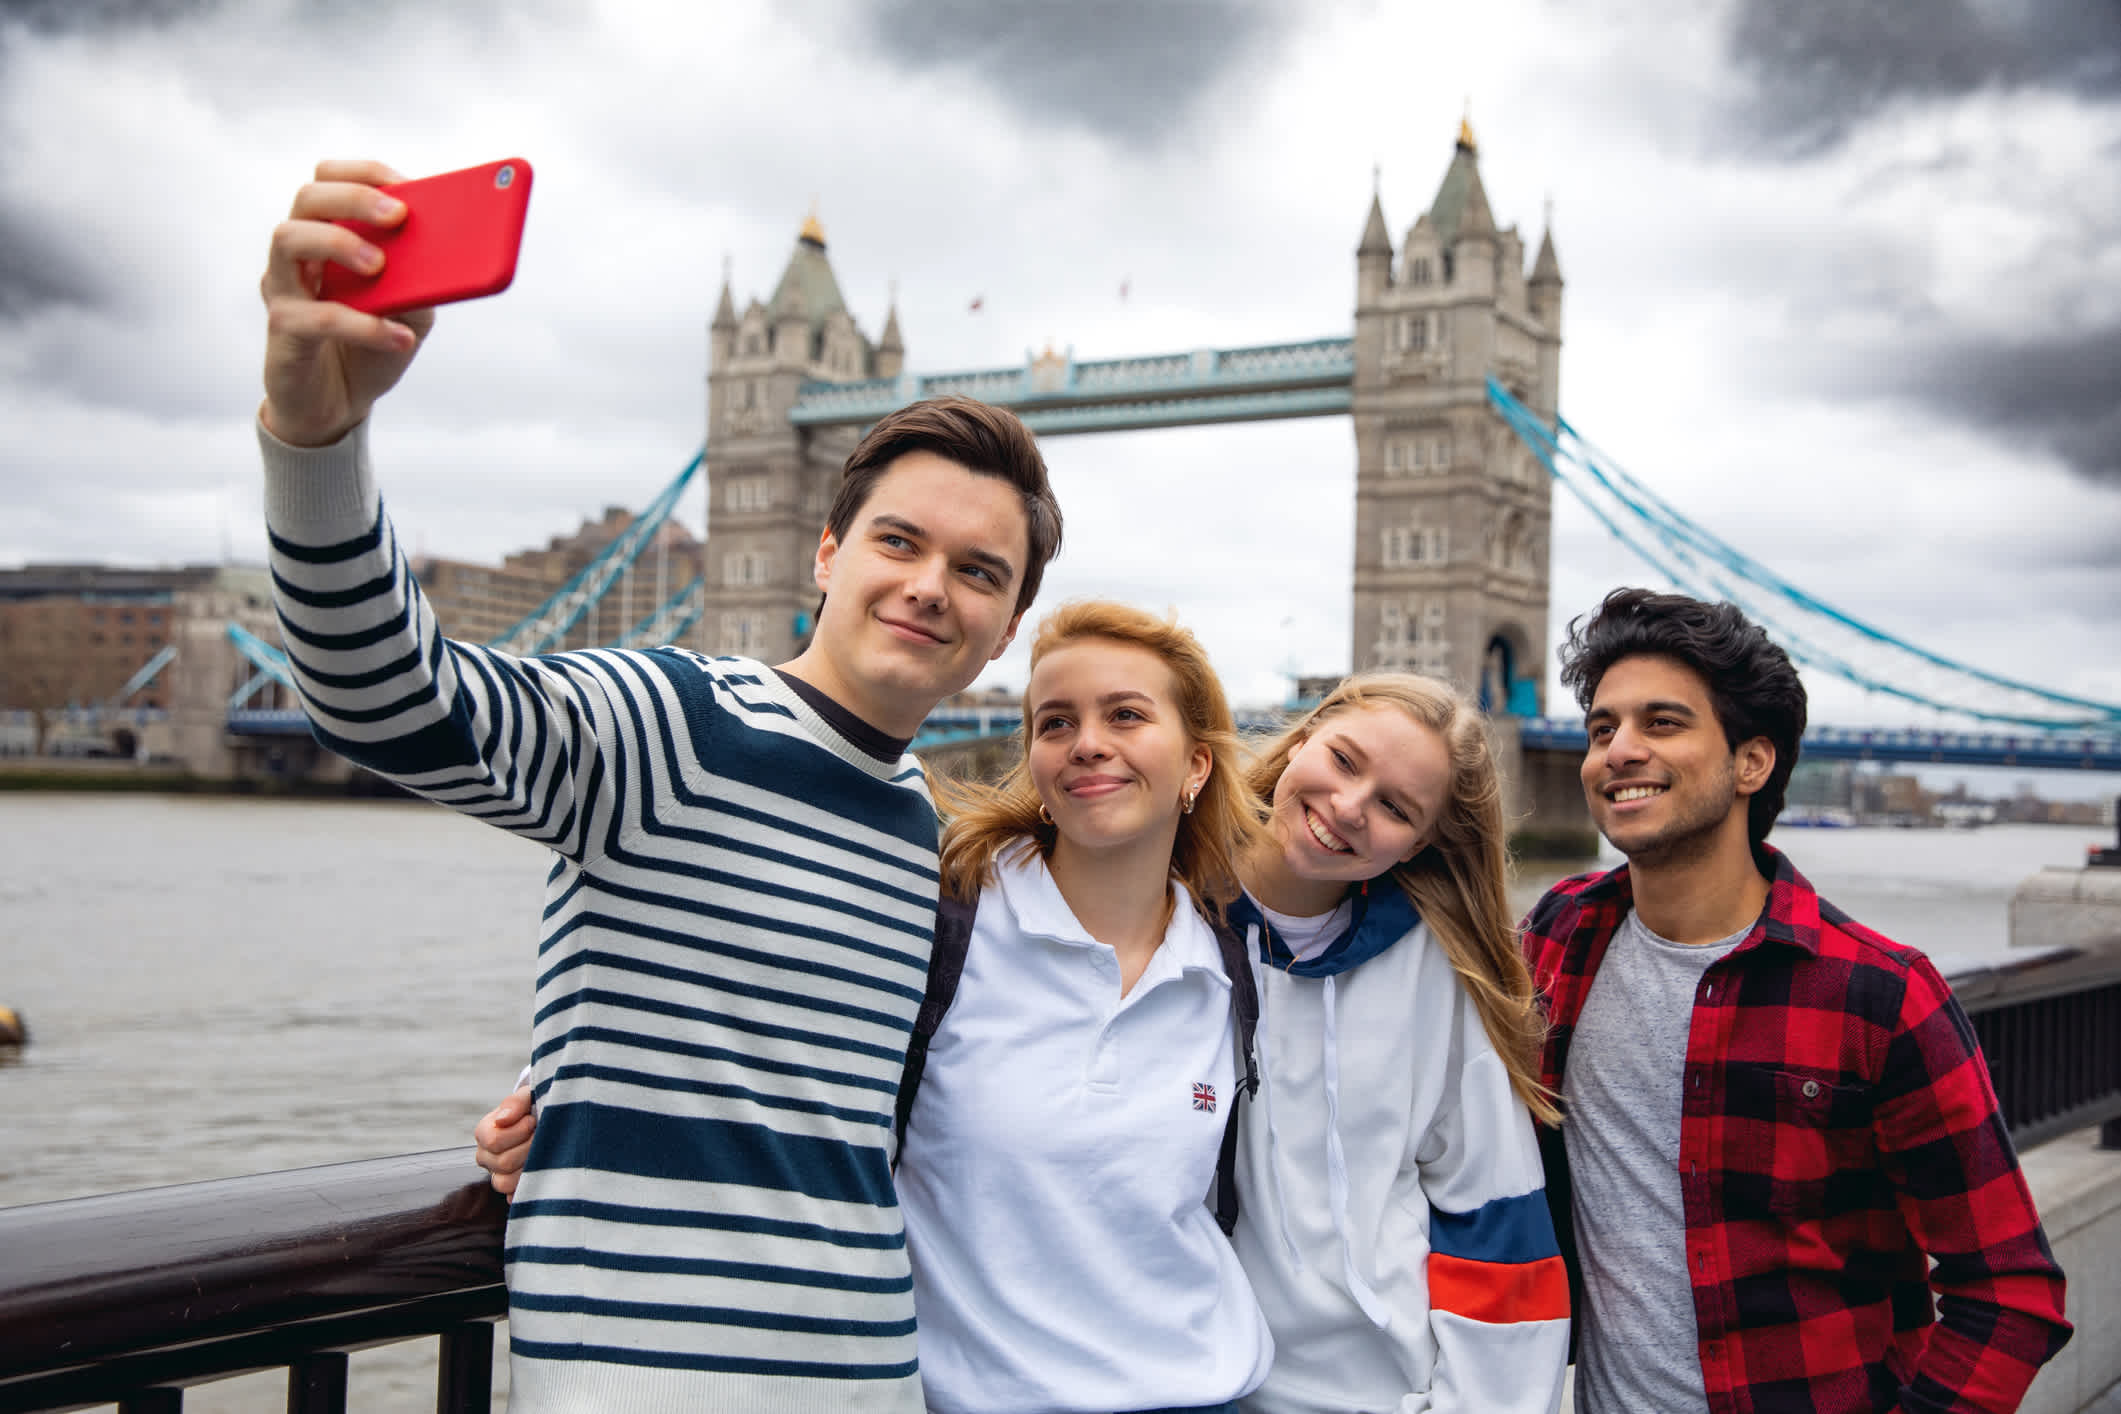 Amis adolescents en visite à Londres sur le Tower Bridge, Angleterre.

